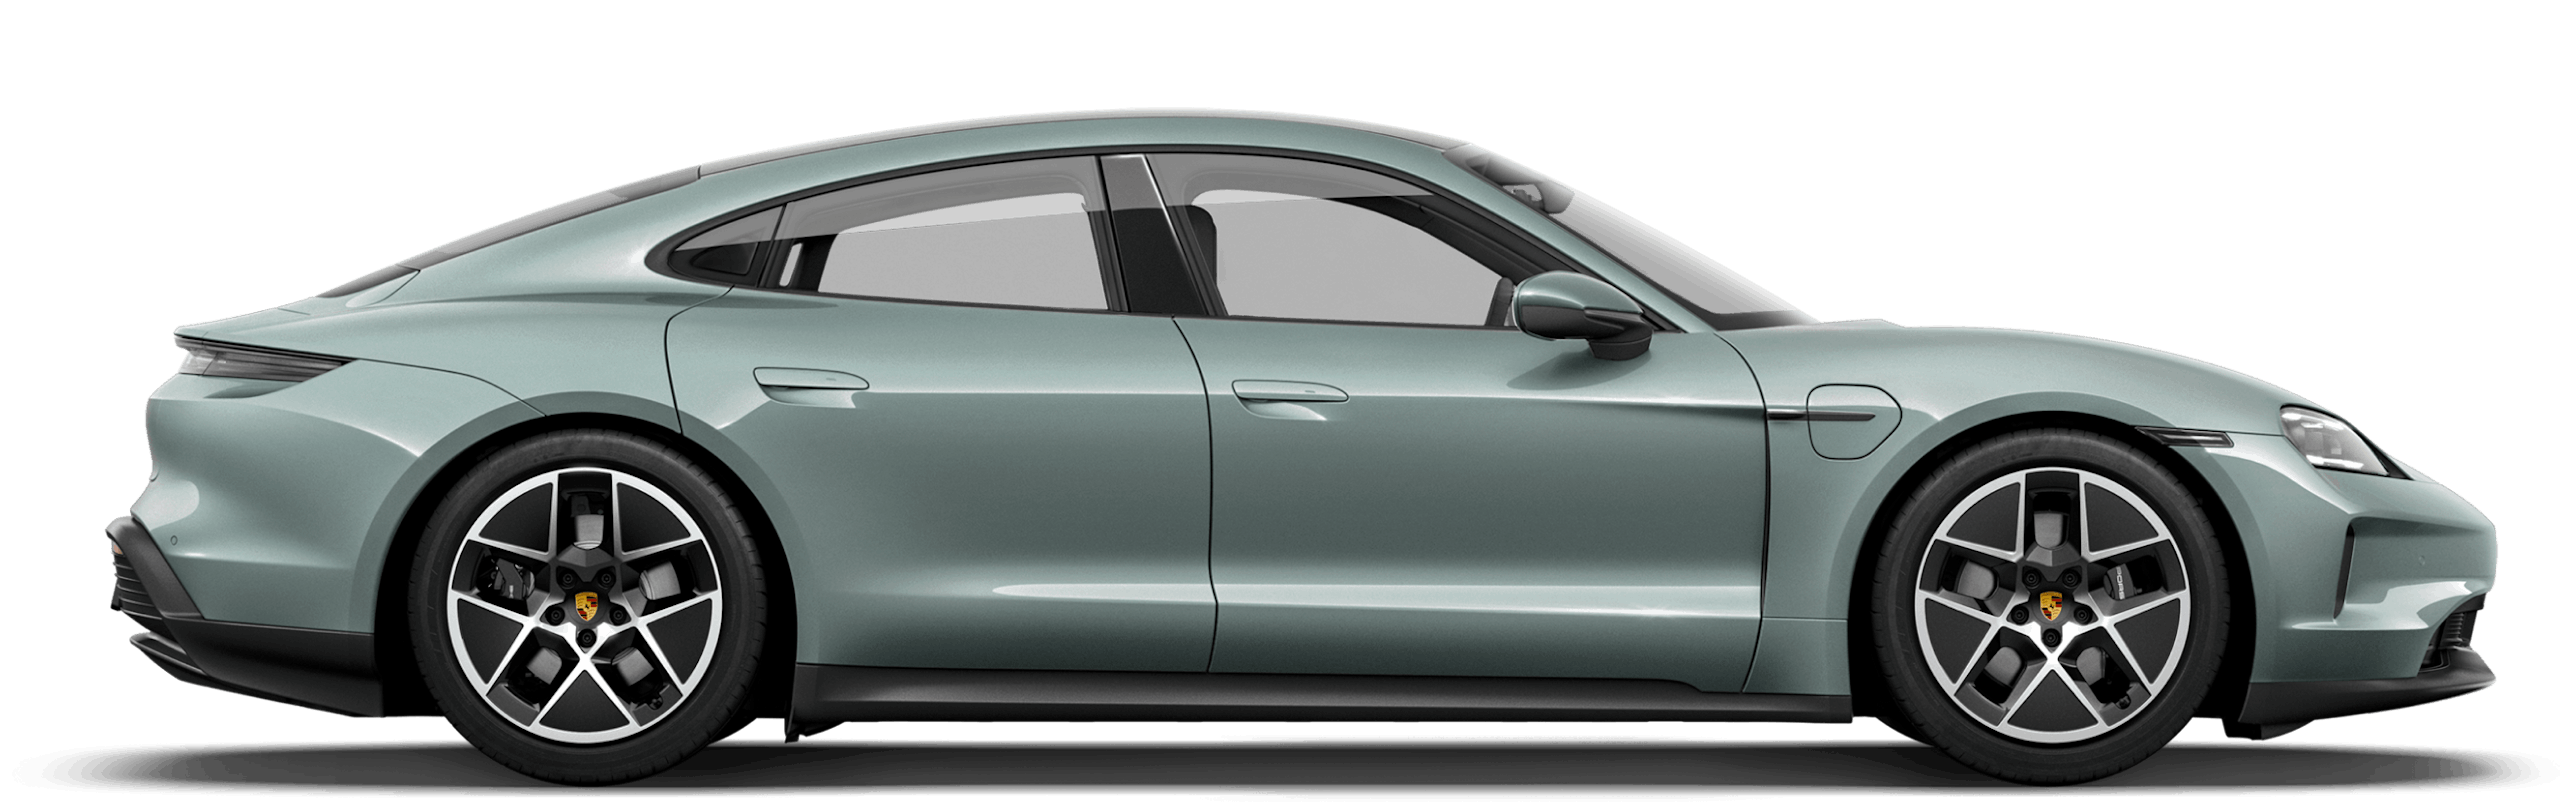 Porsche Taycan Accessories & Upgrades - EV Sportline - The Leader